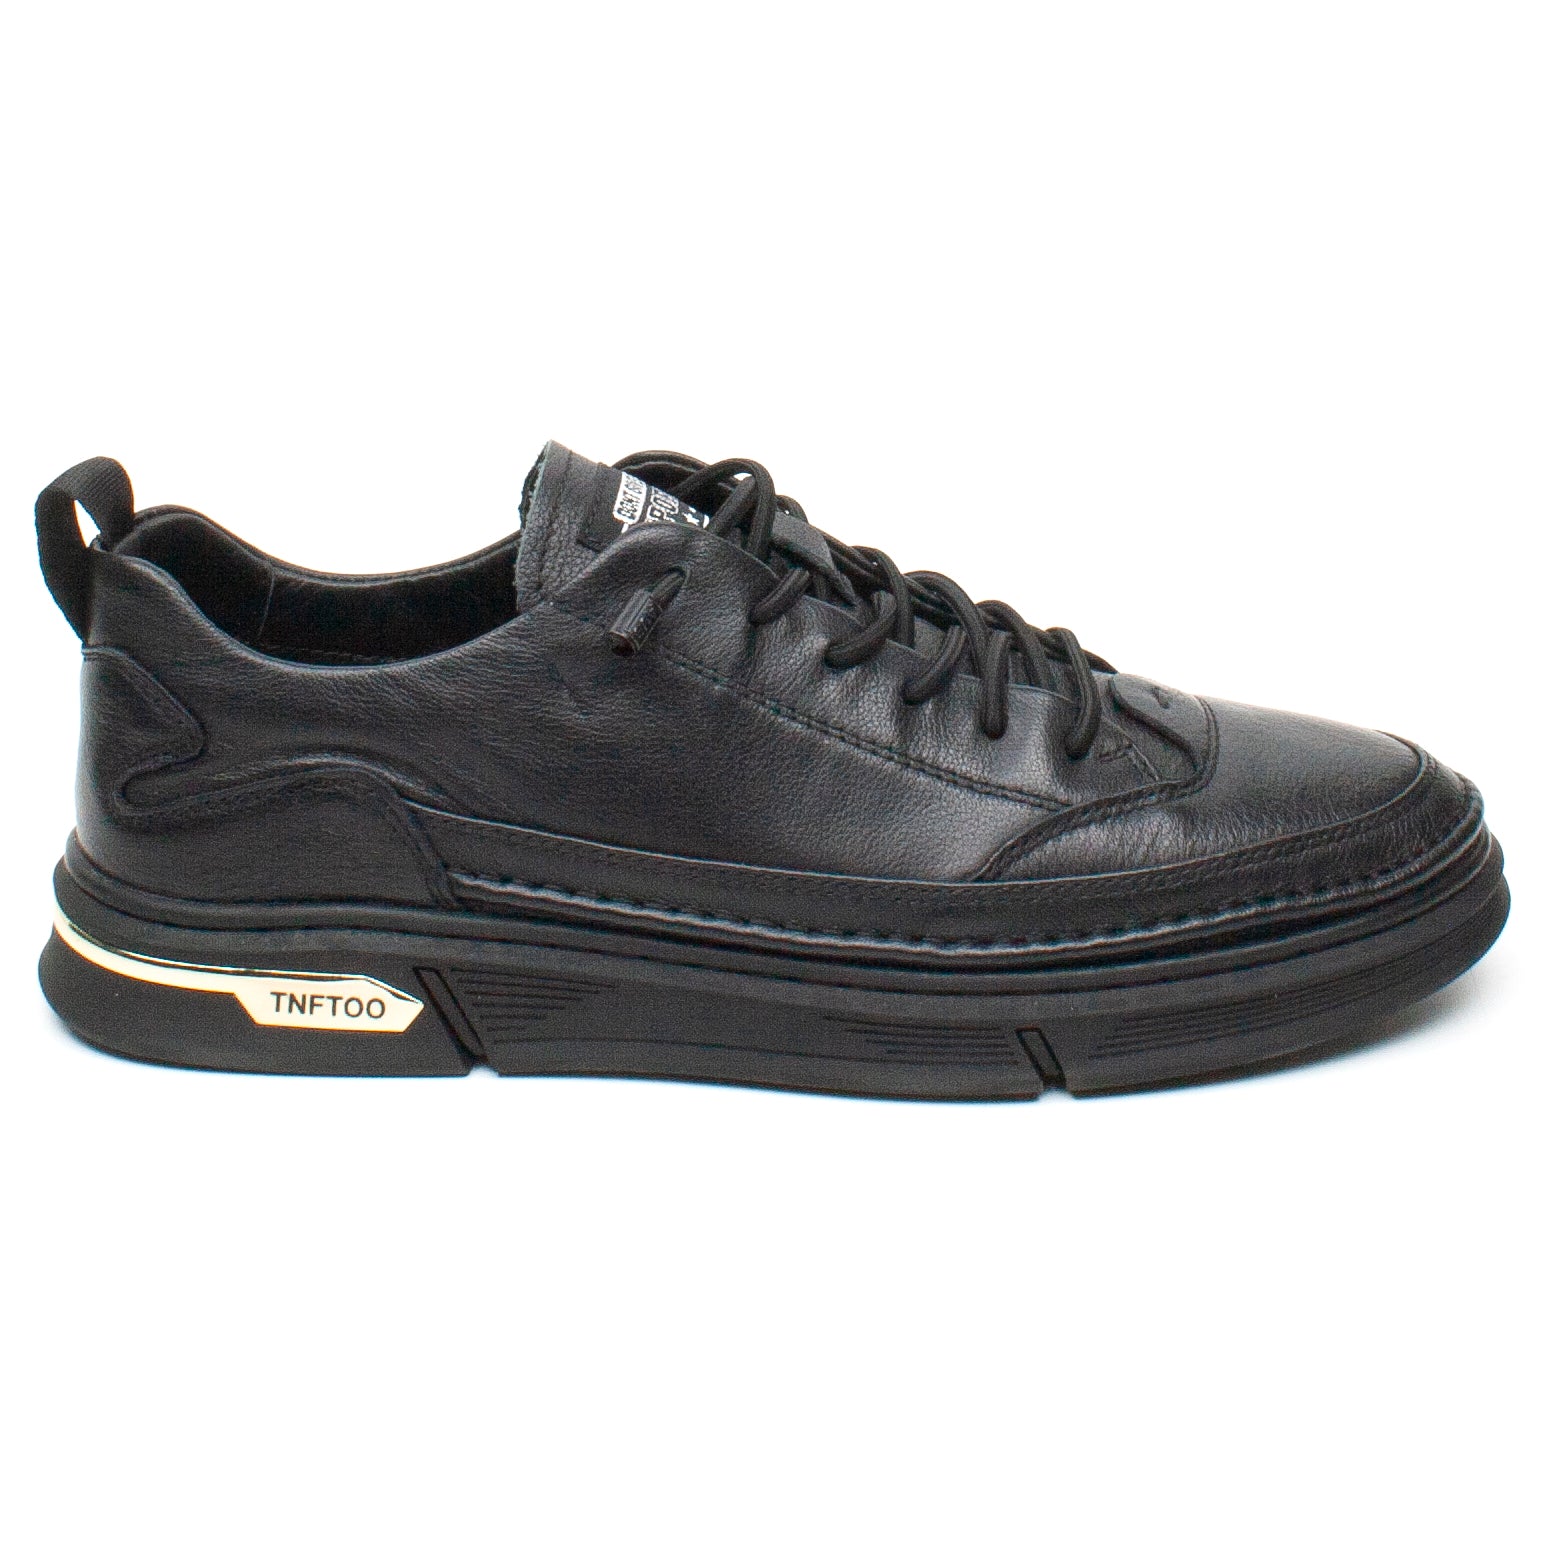 Franco Gerardo pantofi barbati 7662 negru IB2256-NG